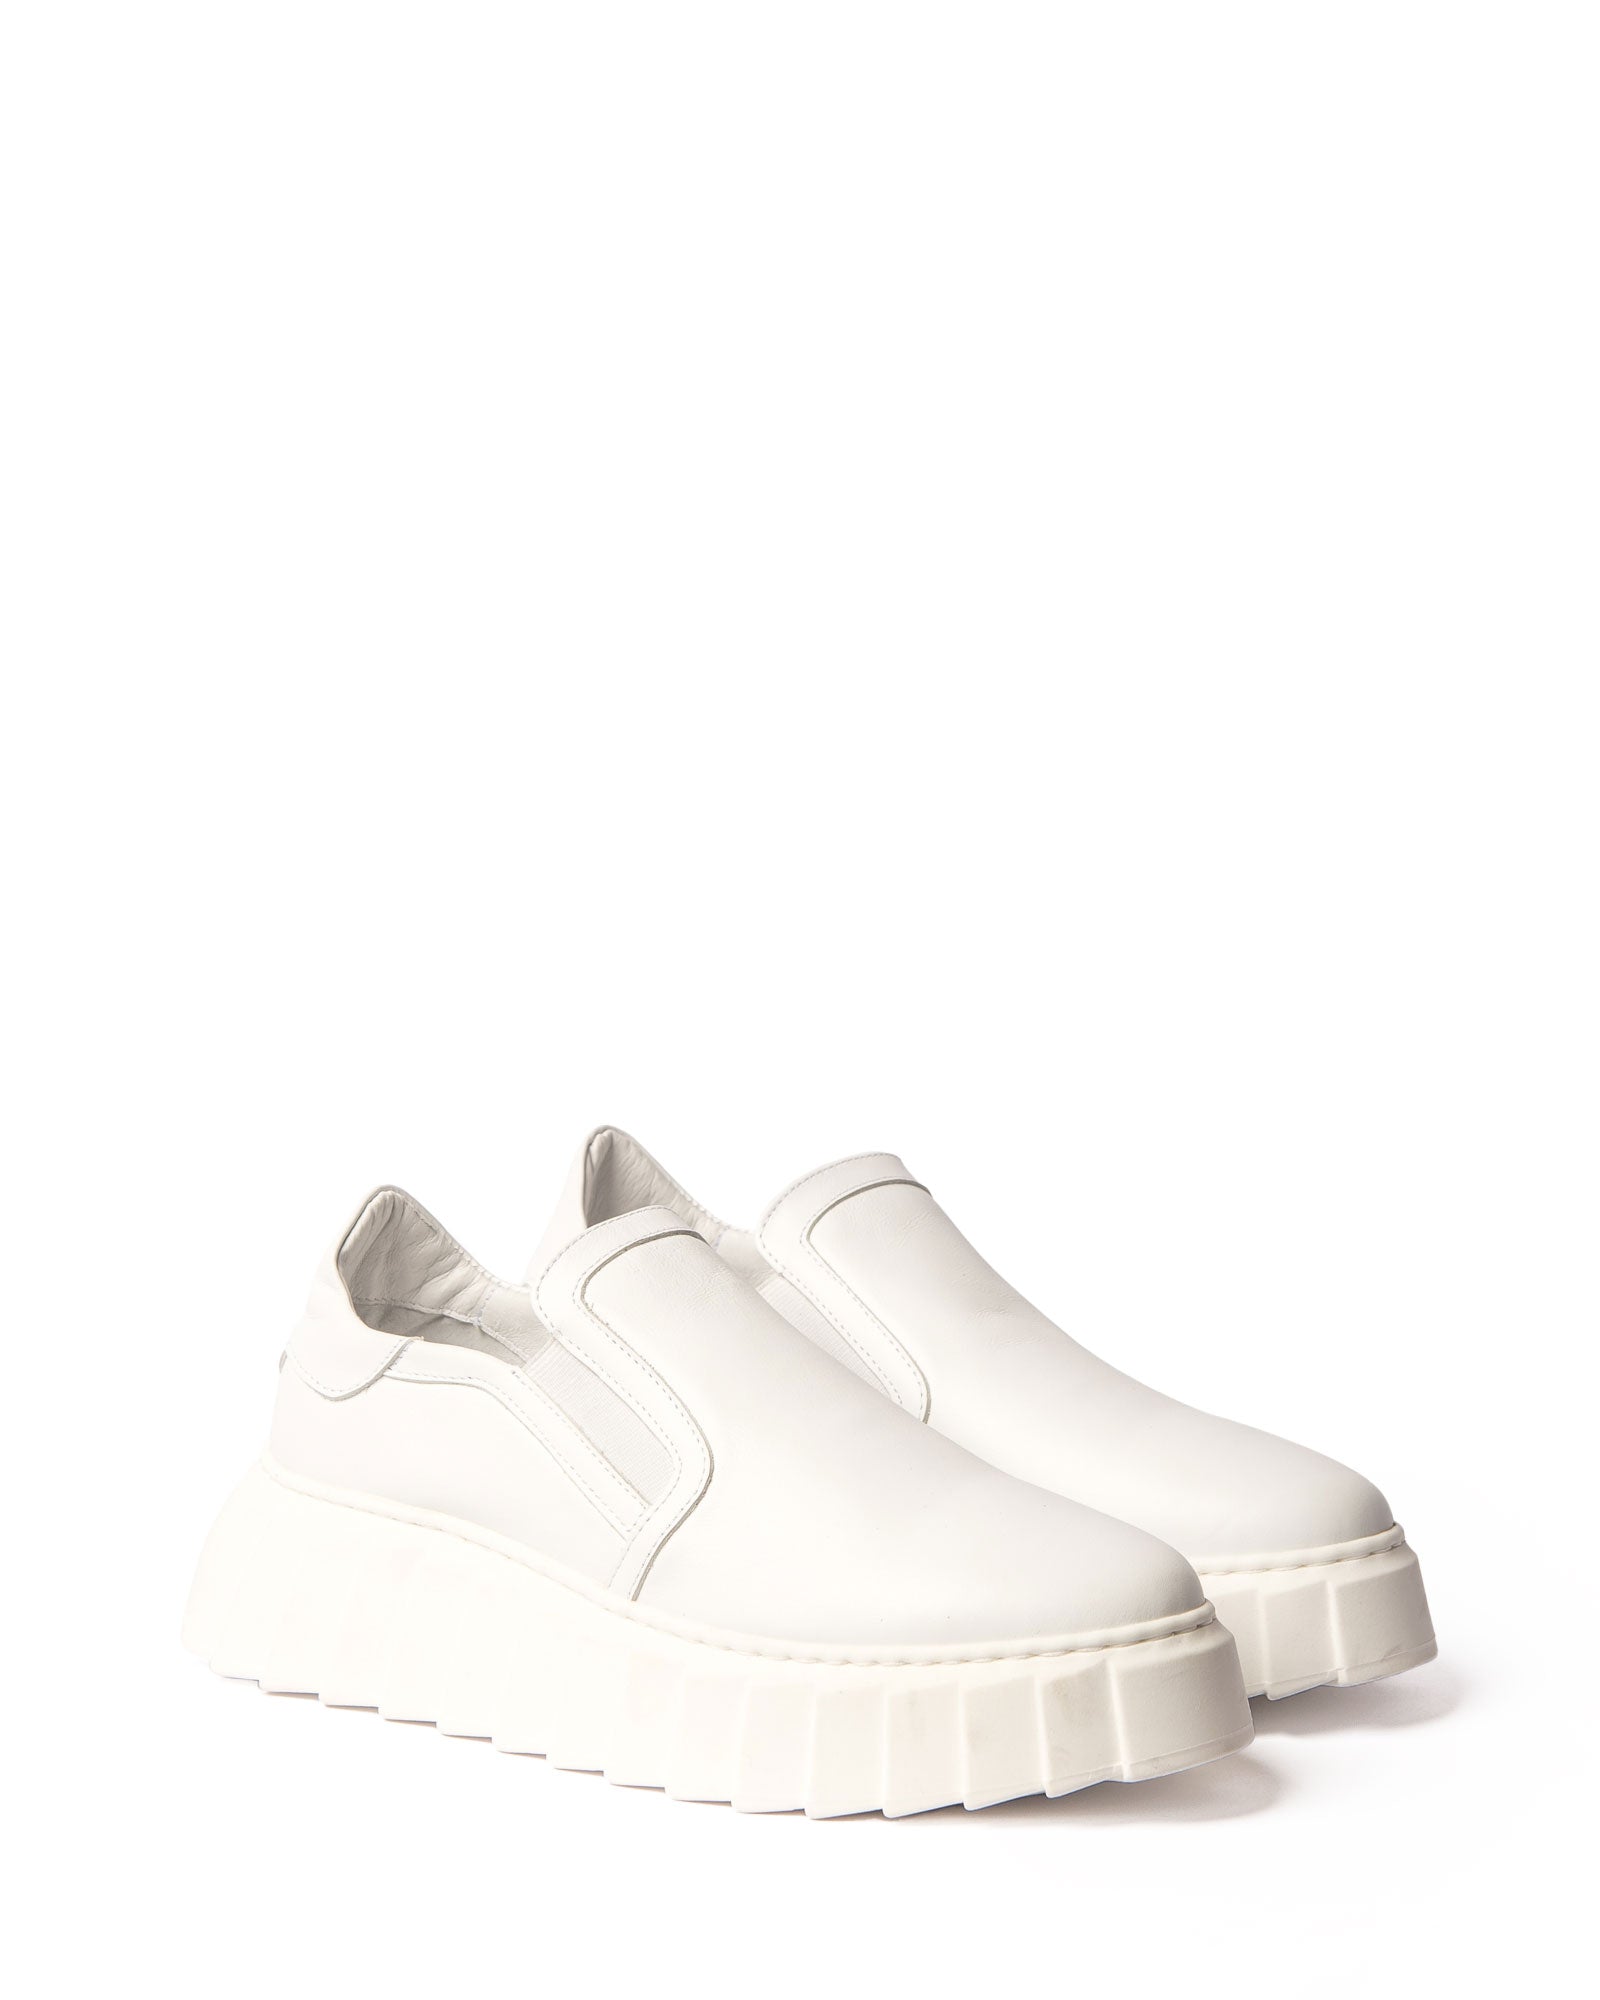 overland sneaker - white